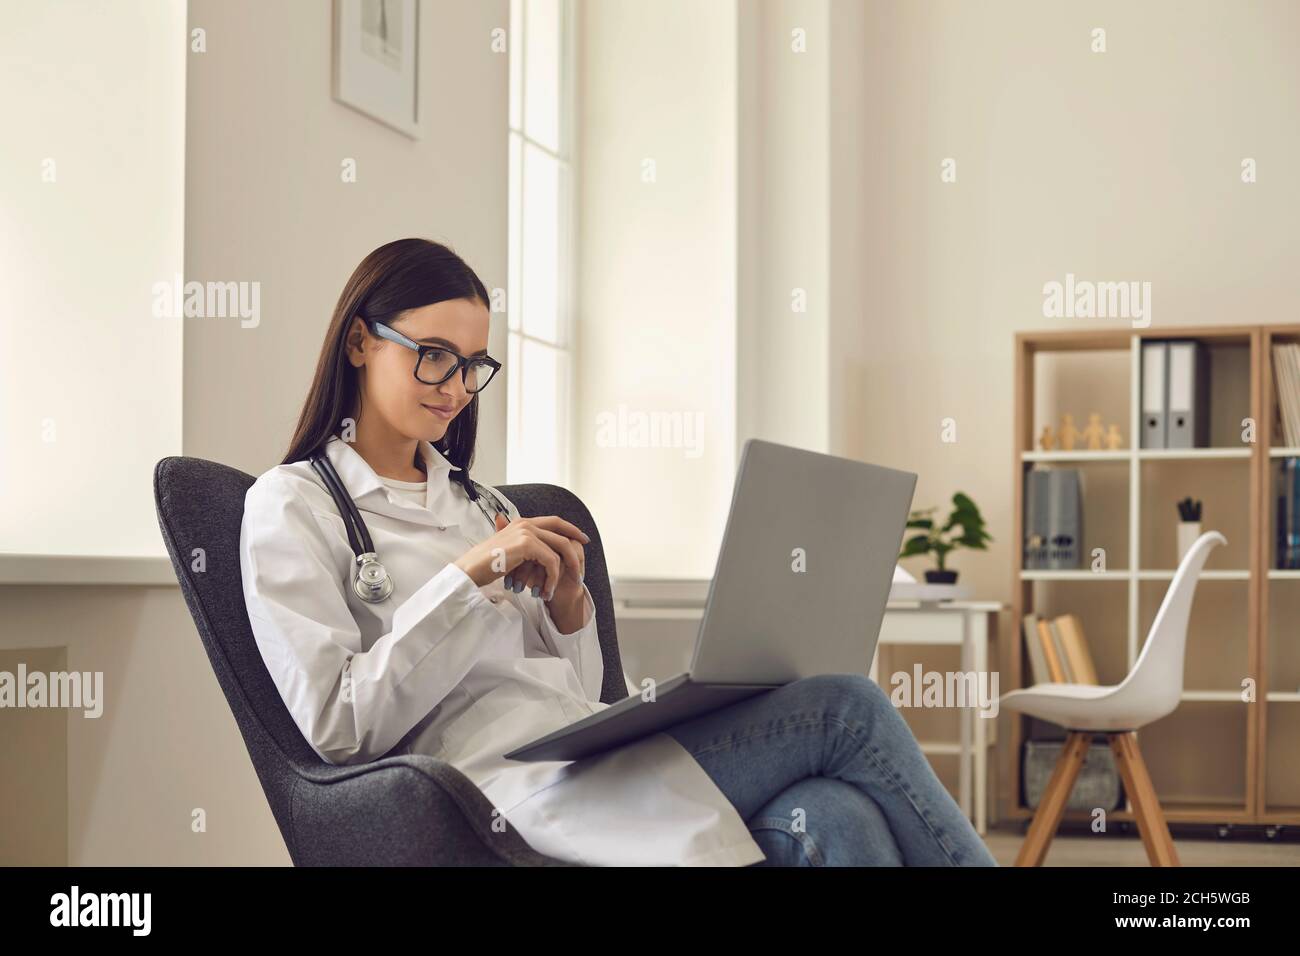 Une femme médecin consulte un patient en ligne par le biais d'un appel vidéo lorsqu'elle est assise au bureau. Banque D'Images